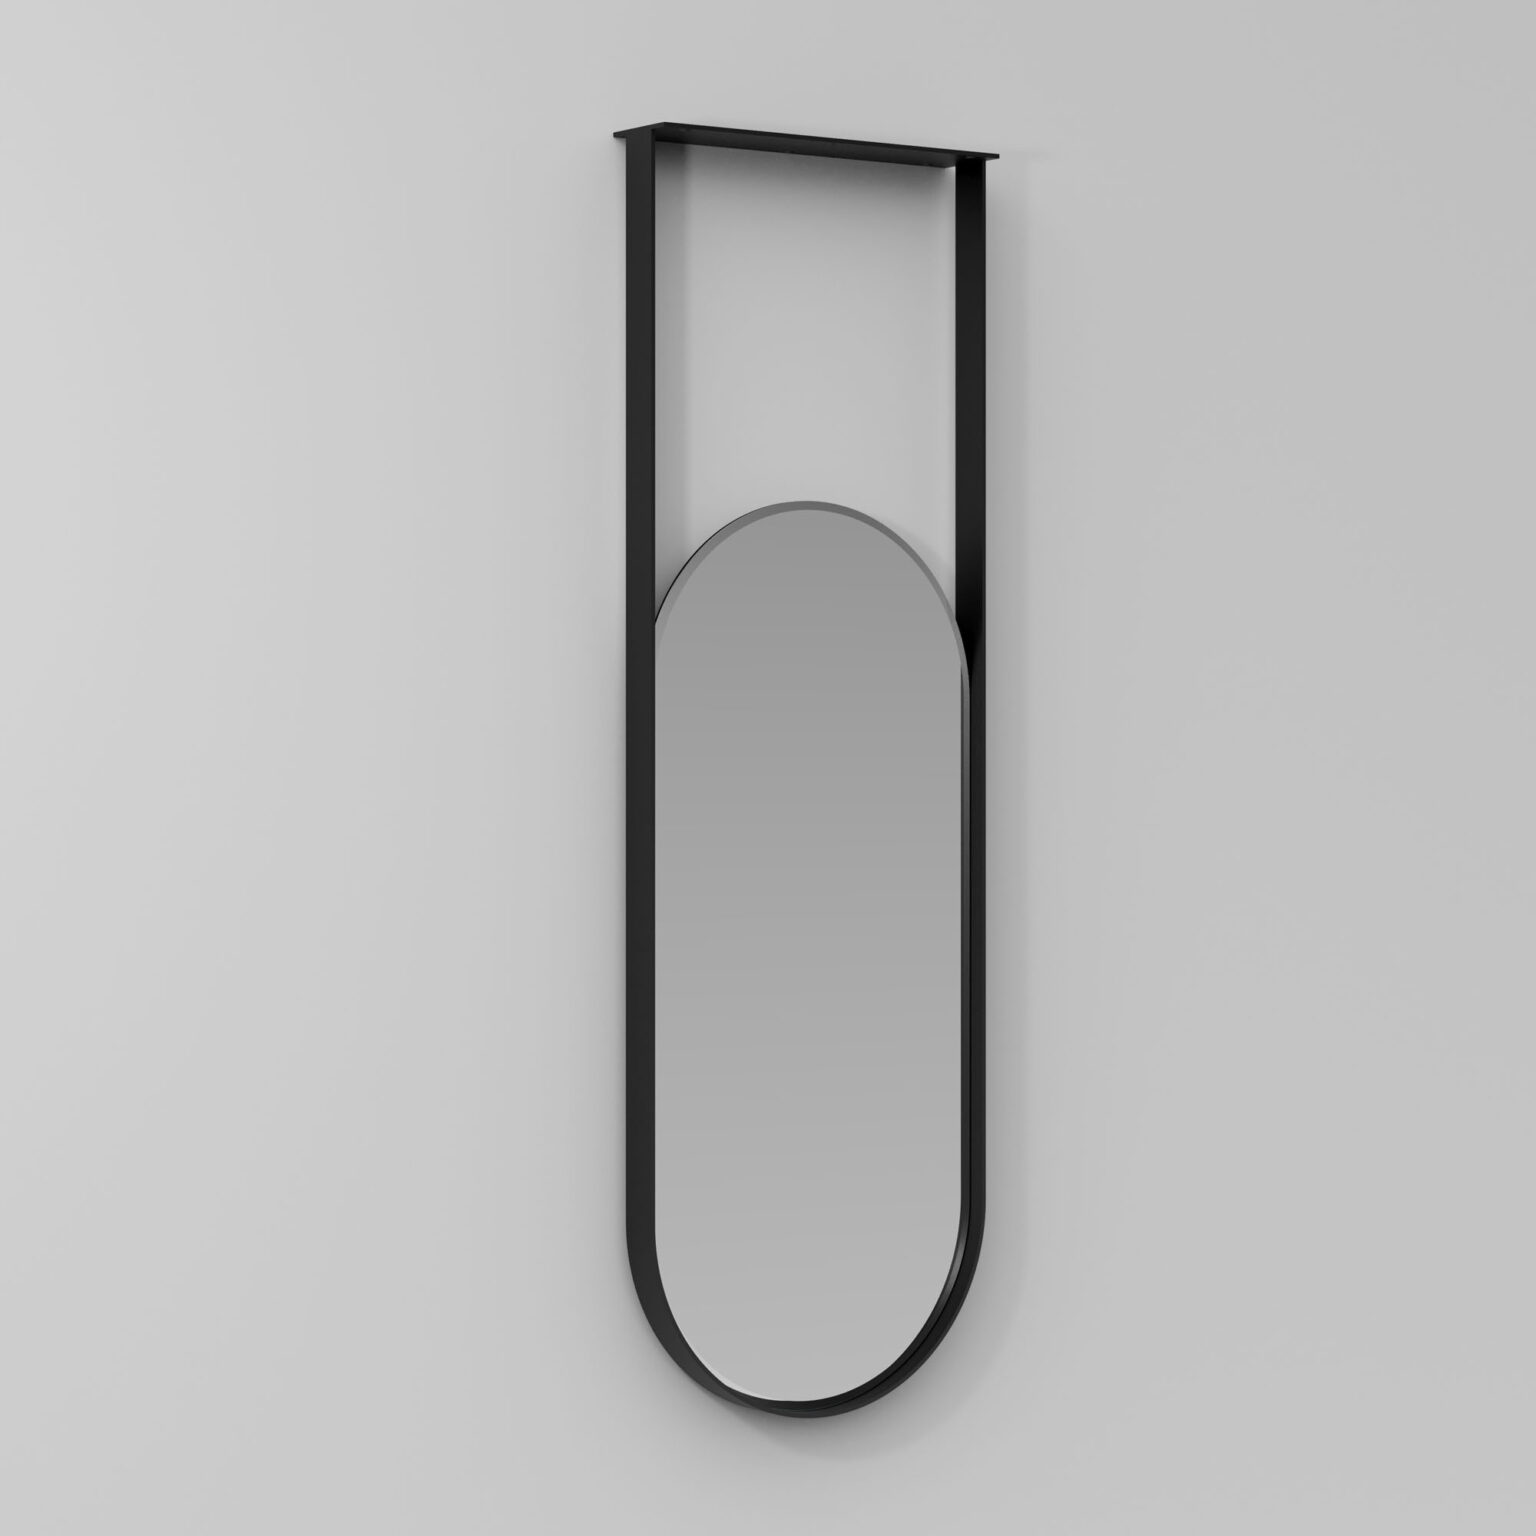 Specchio sospeso a soffitto Specchio ovale moderno con asta sospesa per  bagno, specchio per il trucco chiaro e pratico Specchio decorativo per